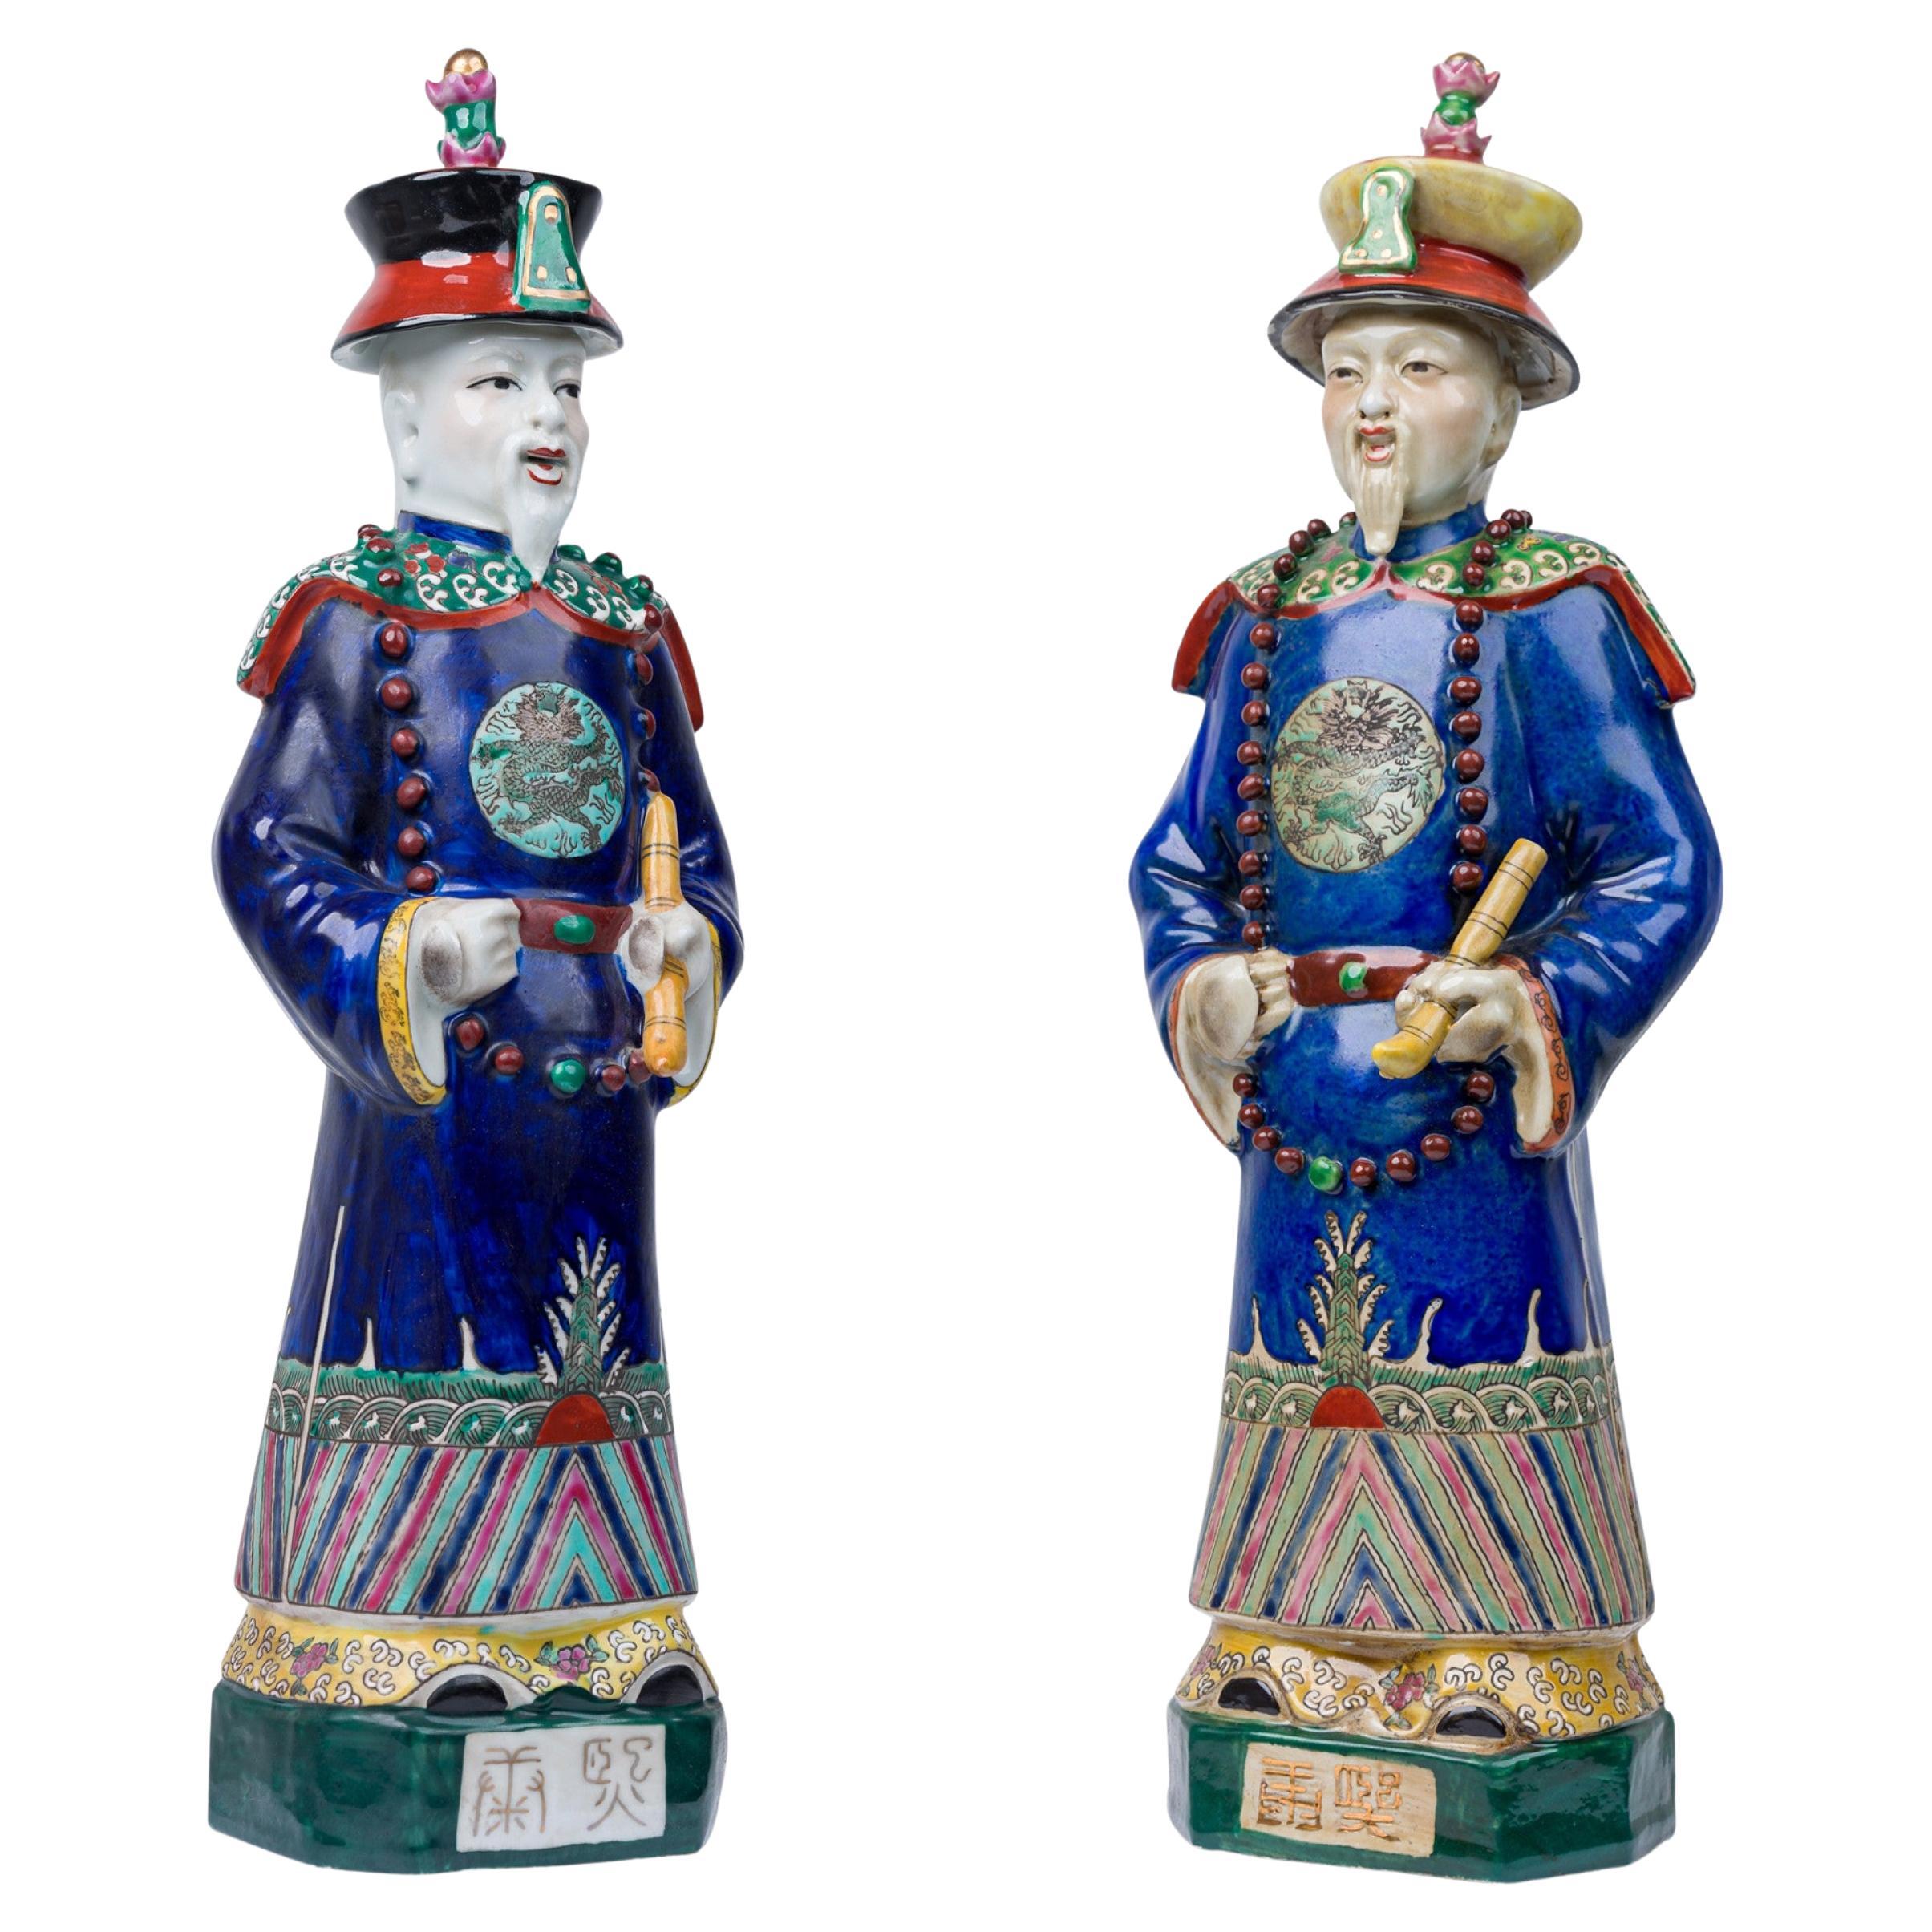 Paire de figures chinoises en céramique peintes représentant un empereur bleu vêtu